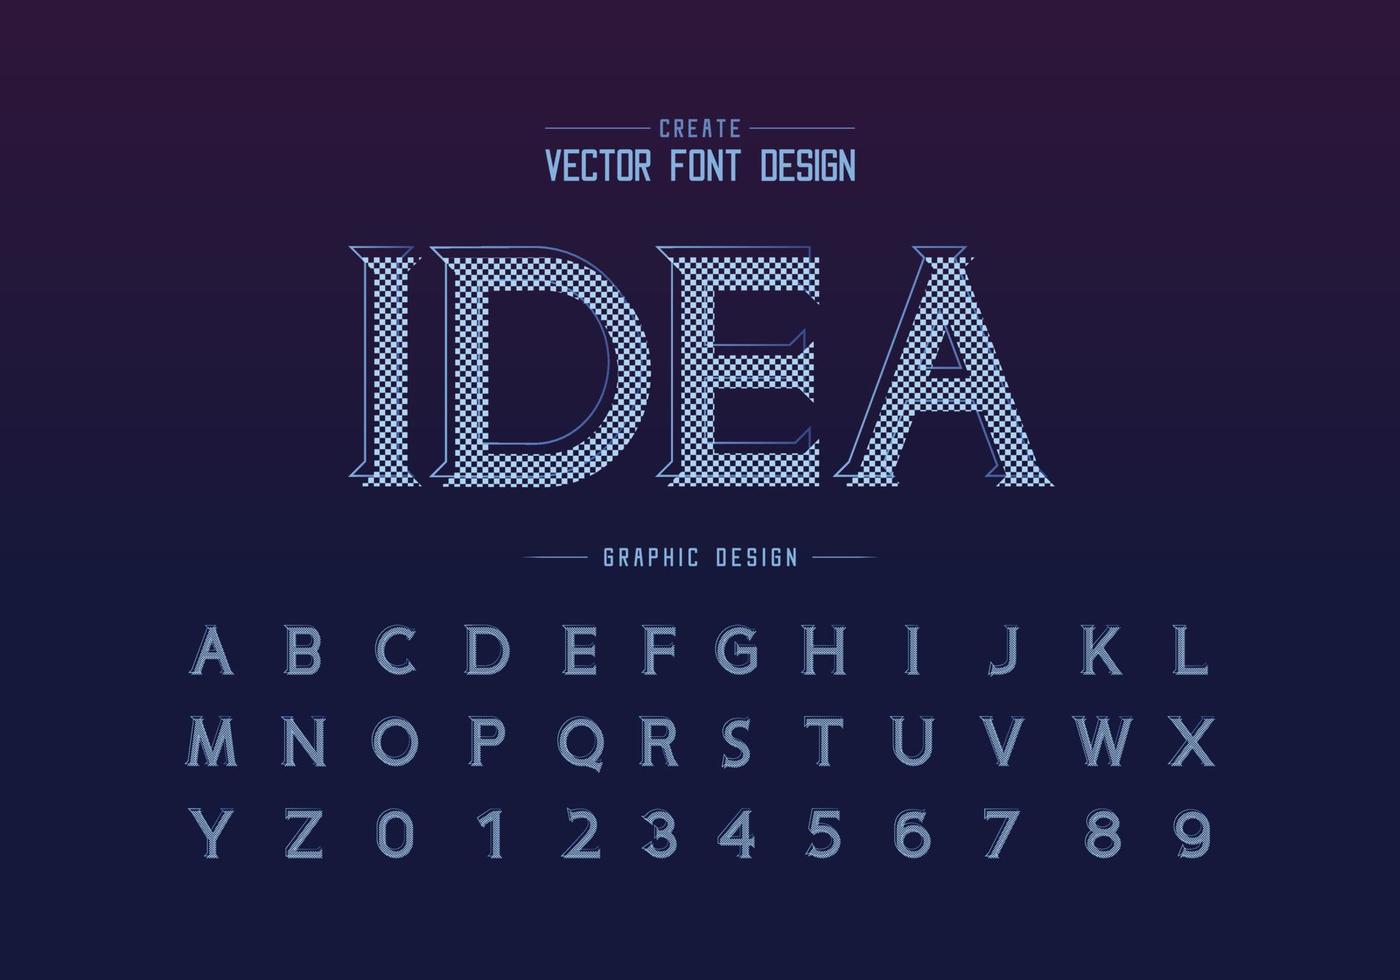 fonte de pixel e vetor de alfabeto, letra de tipo de ideia e design de número, texto gráfico em fundo